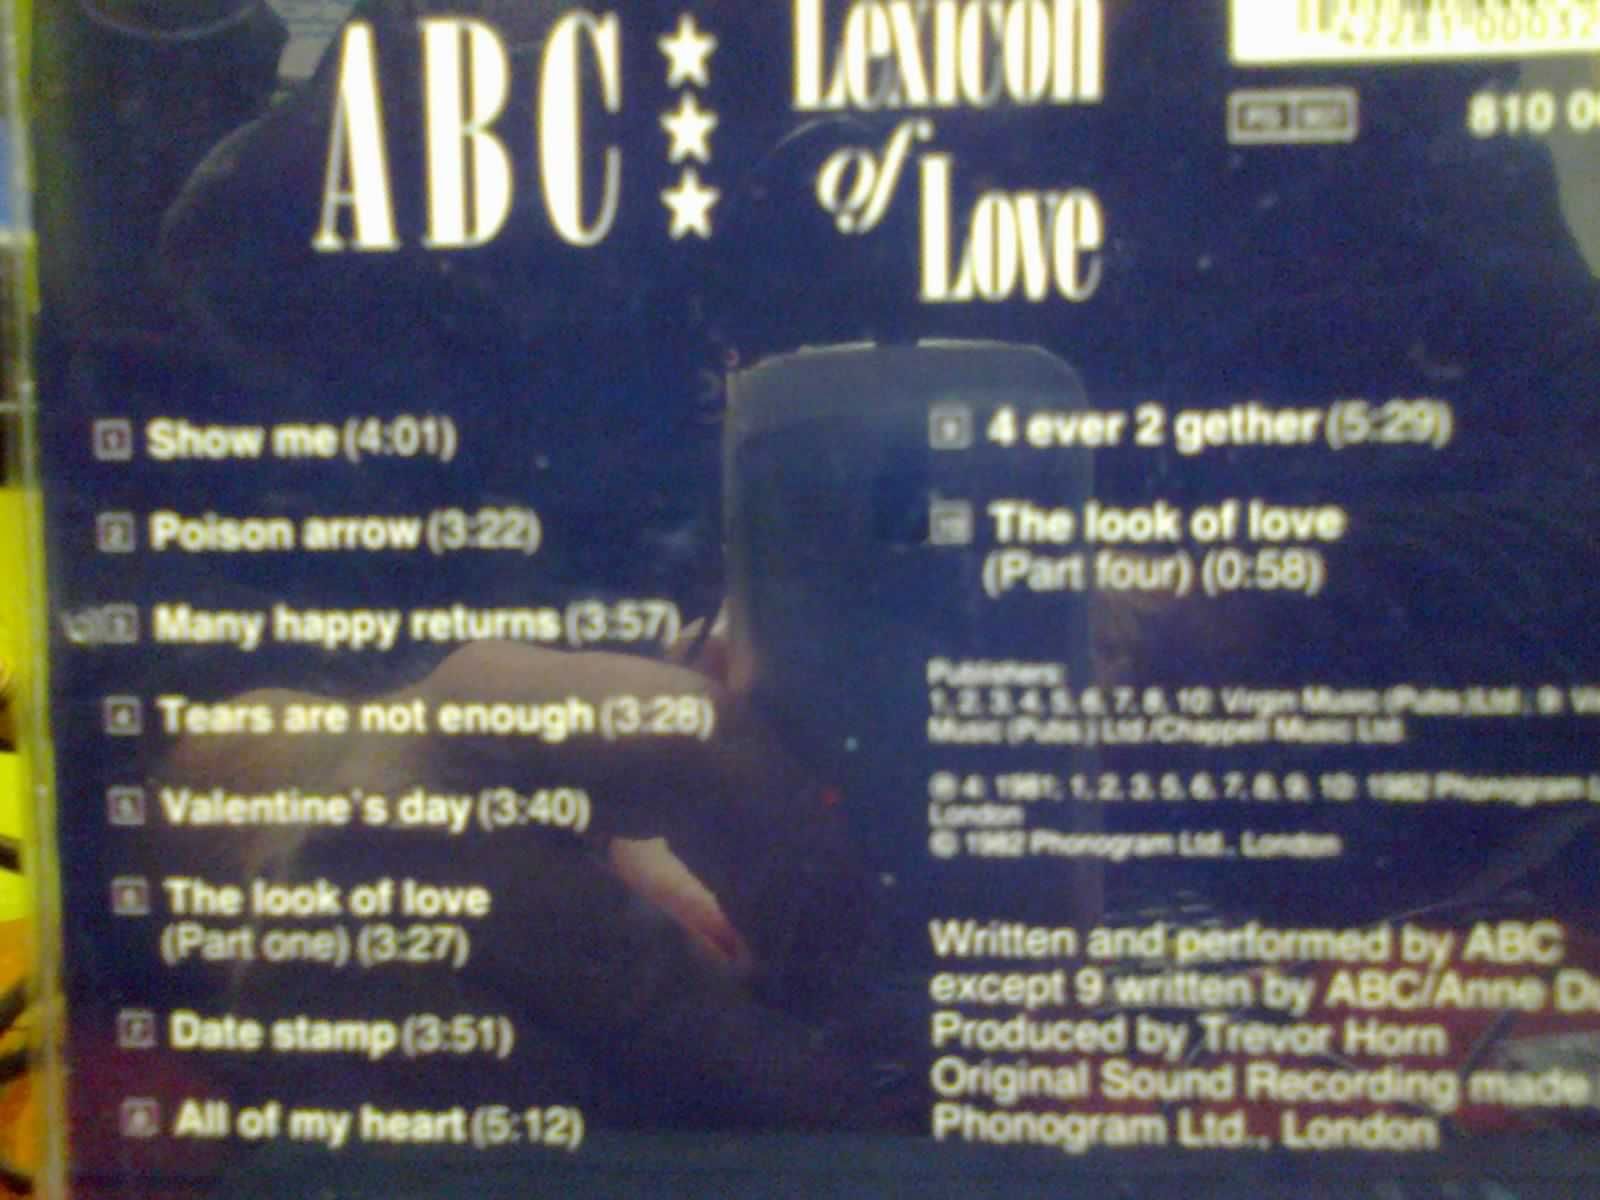 płyta cd grupy abc the lexicon of love orginał